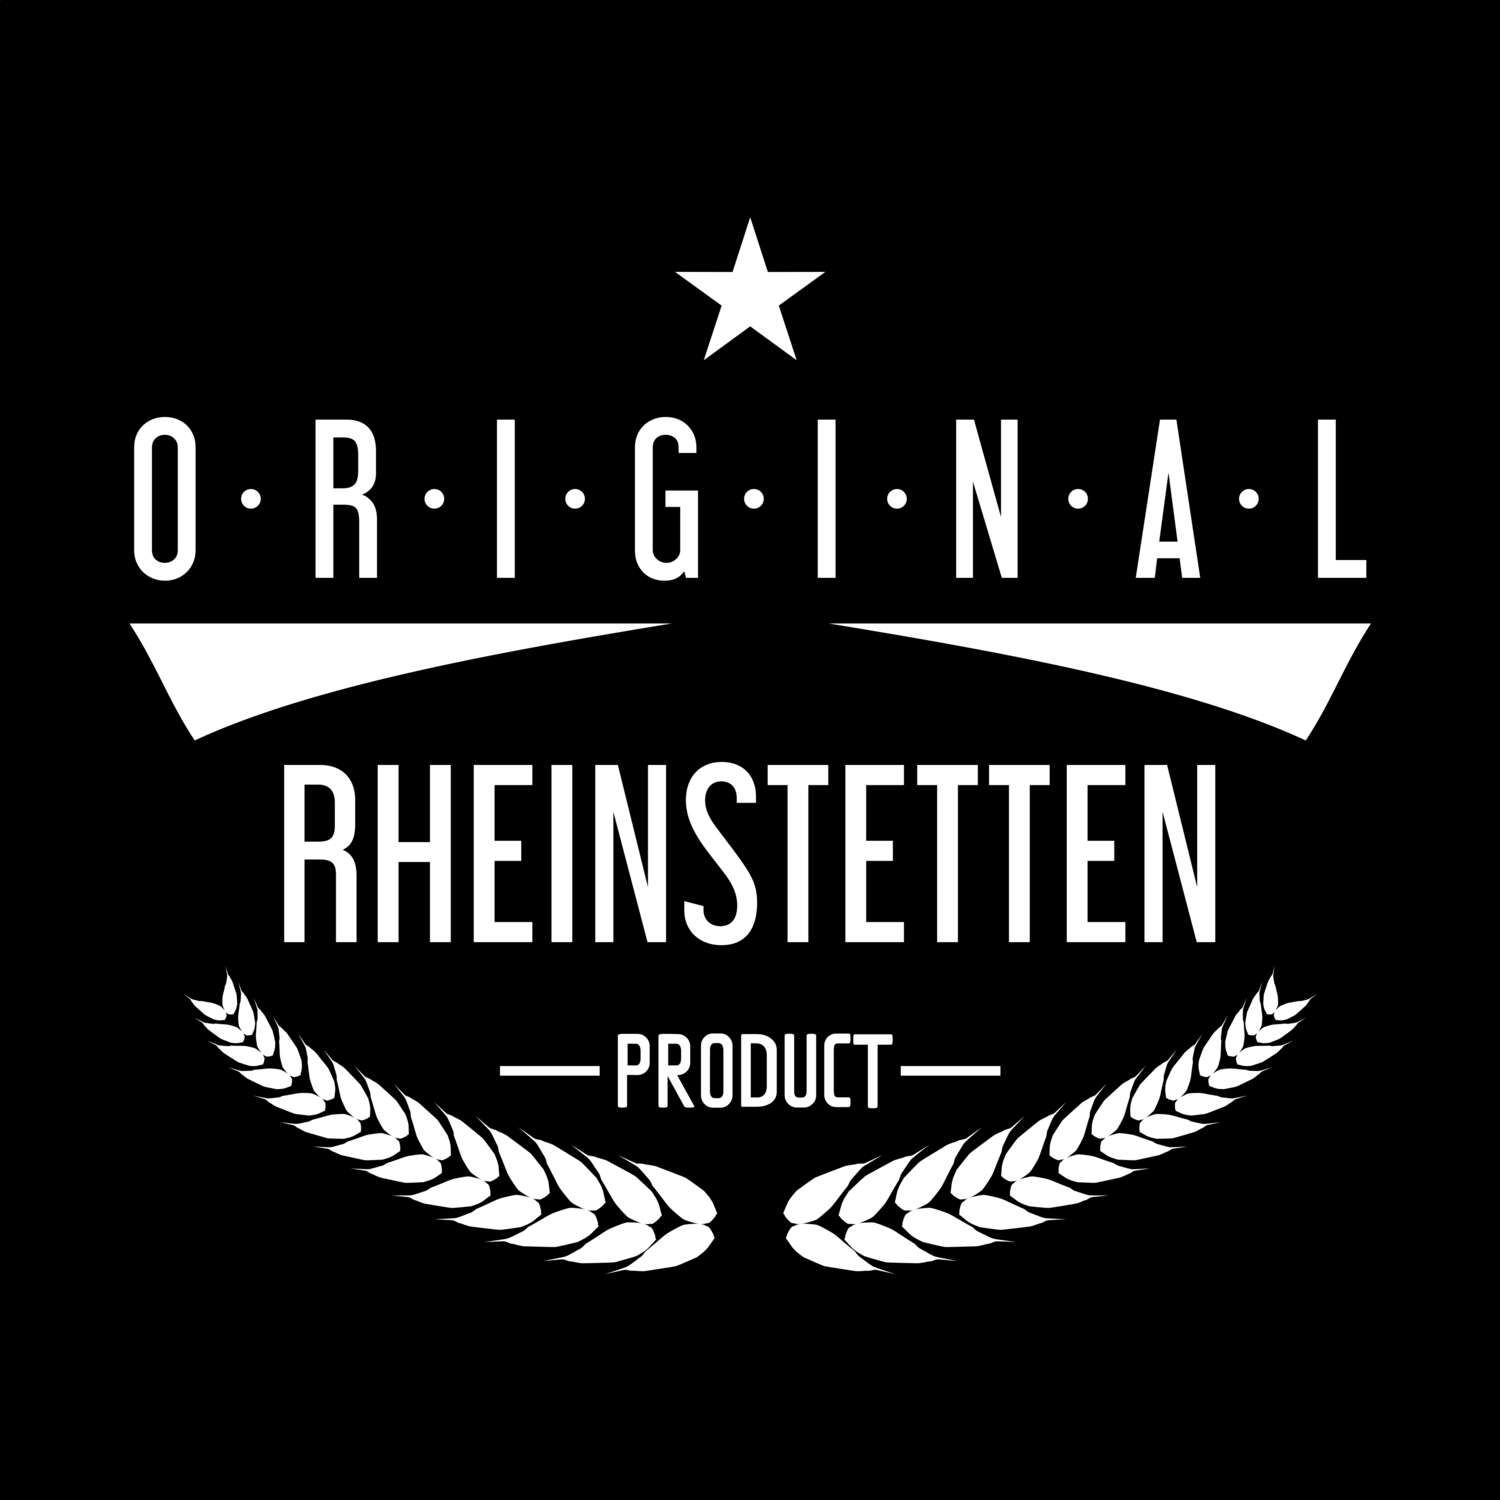 Rheinstetten T-Shirt »Original Product«